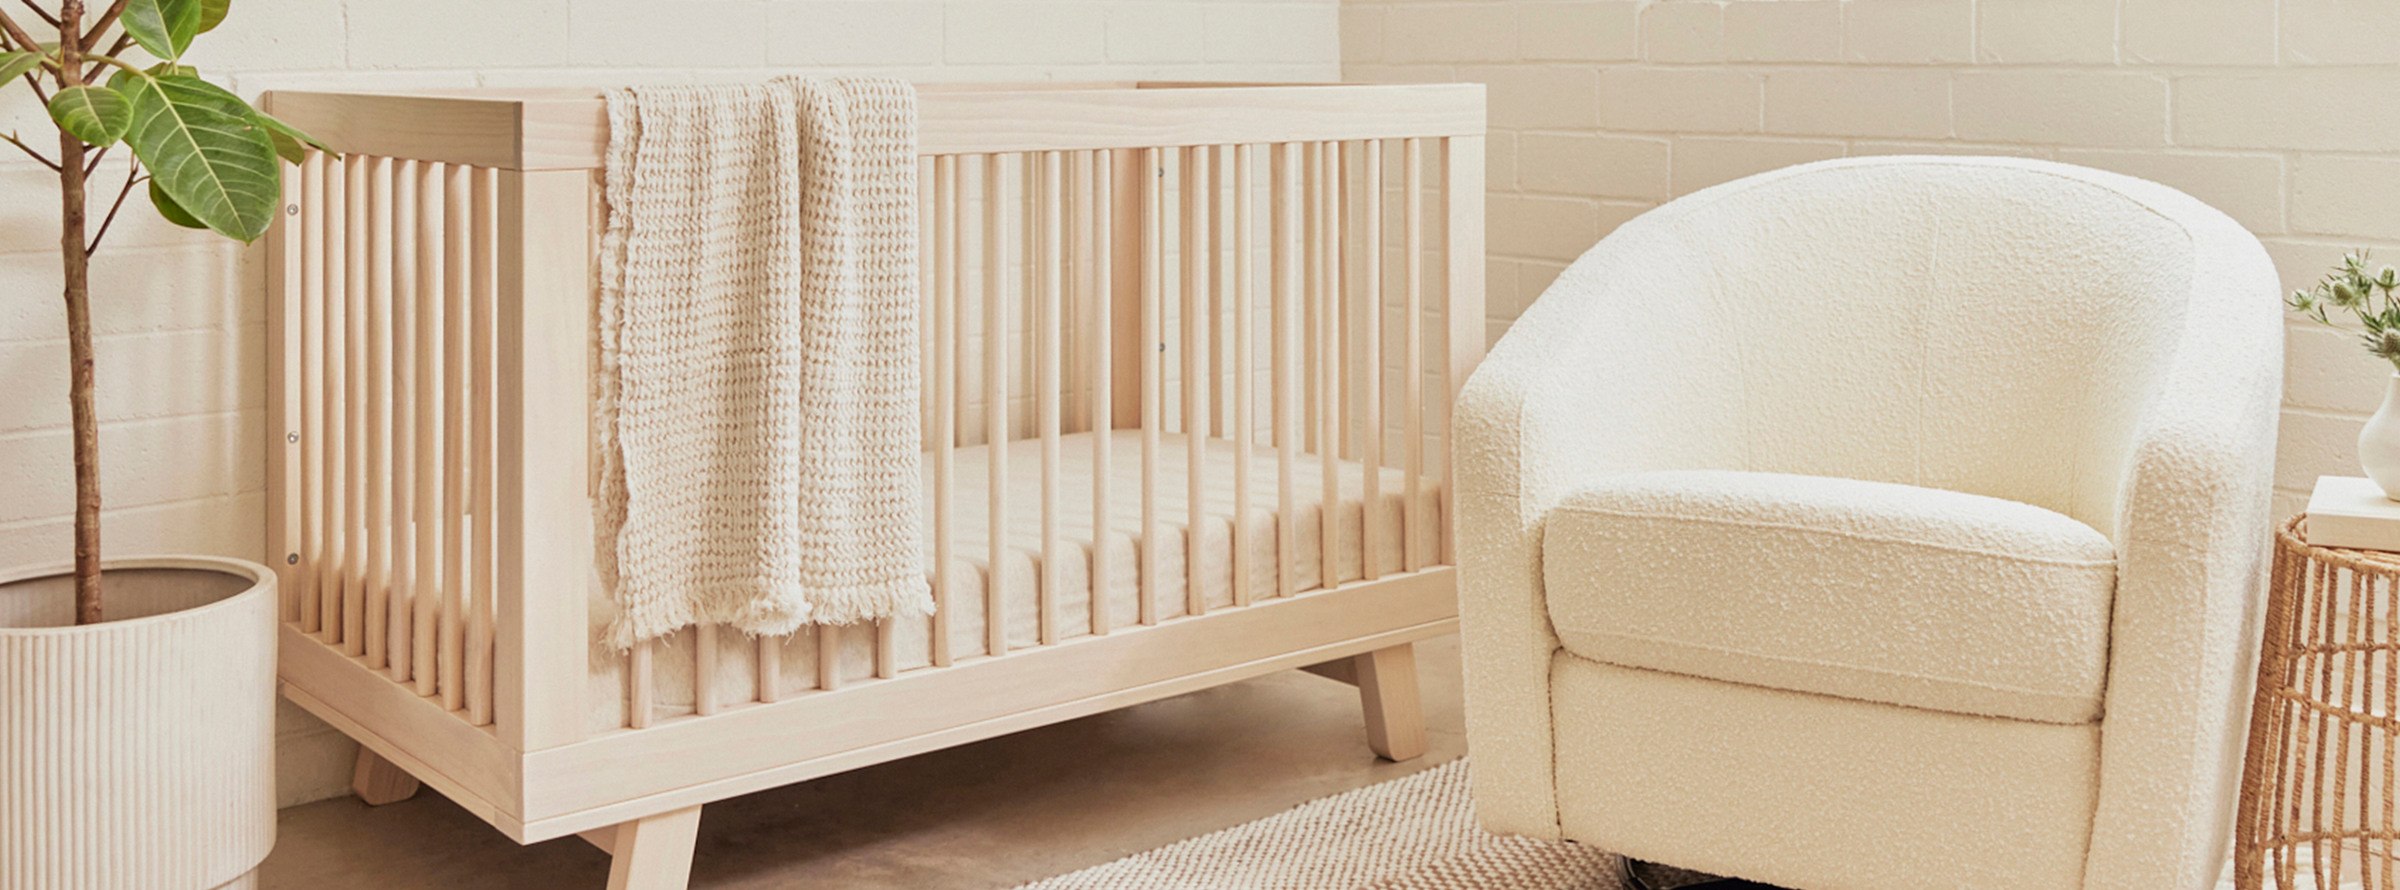 baby nursery cot nursing chair